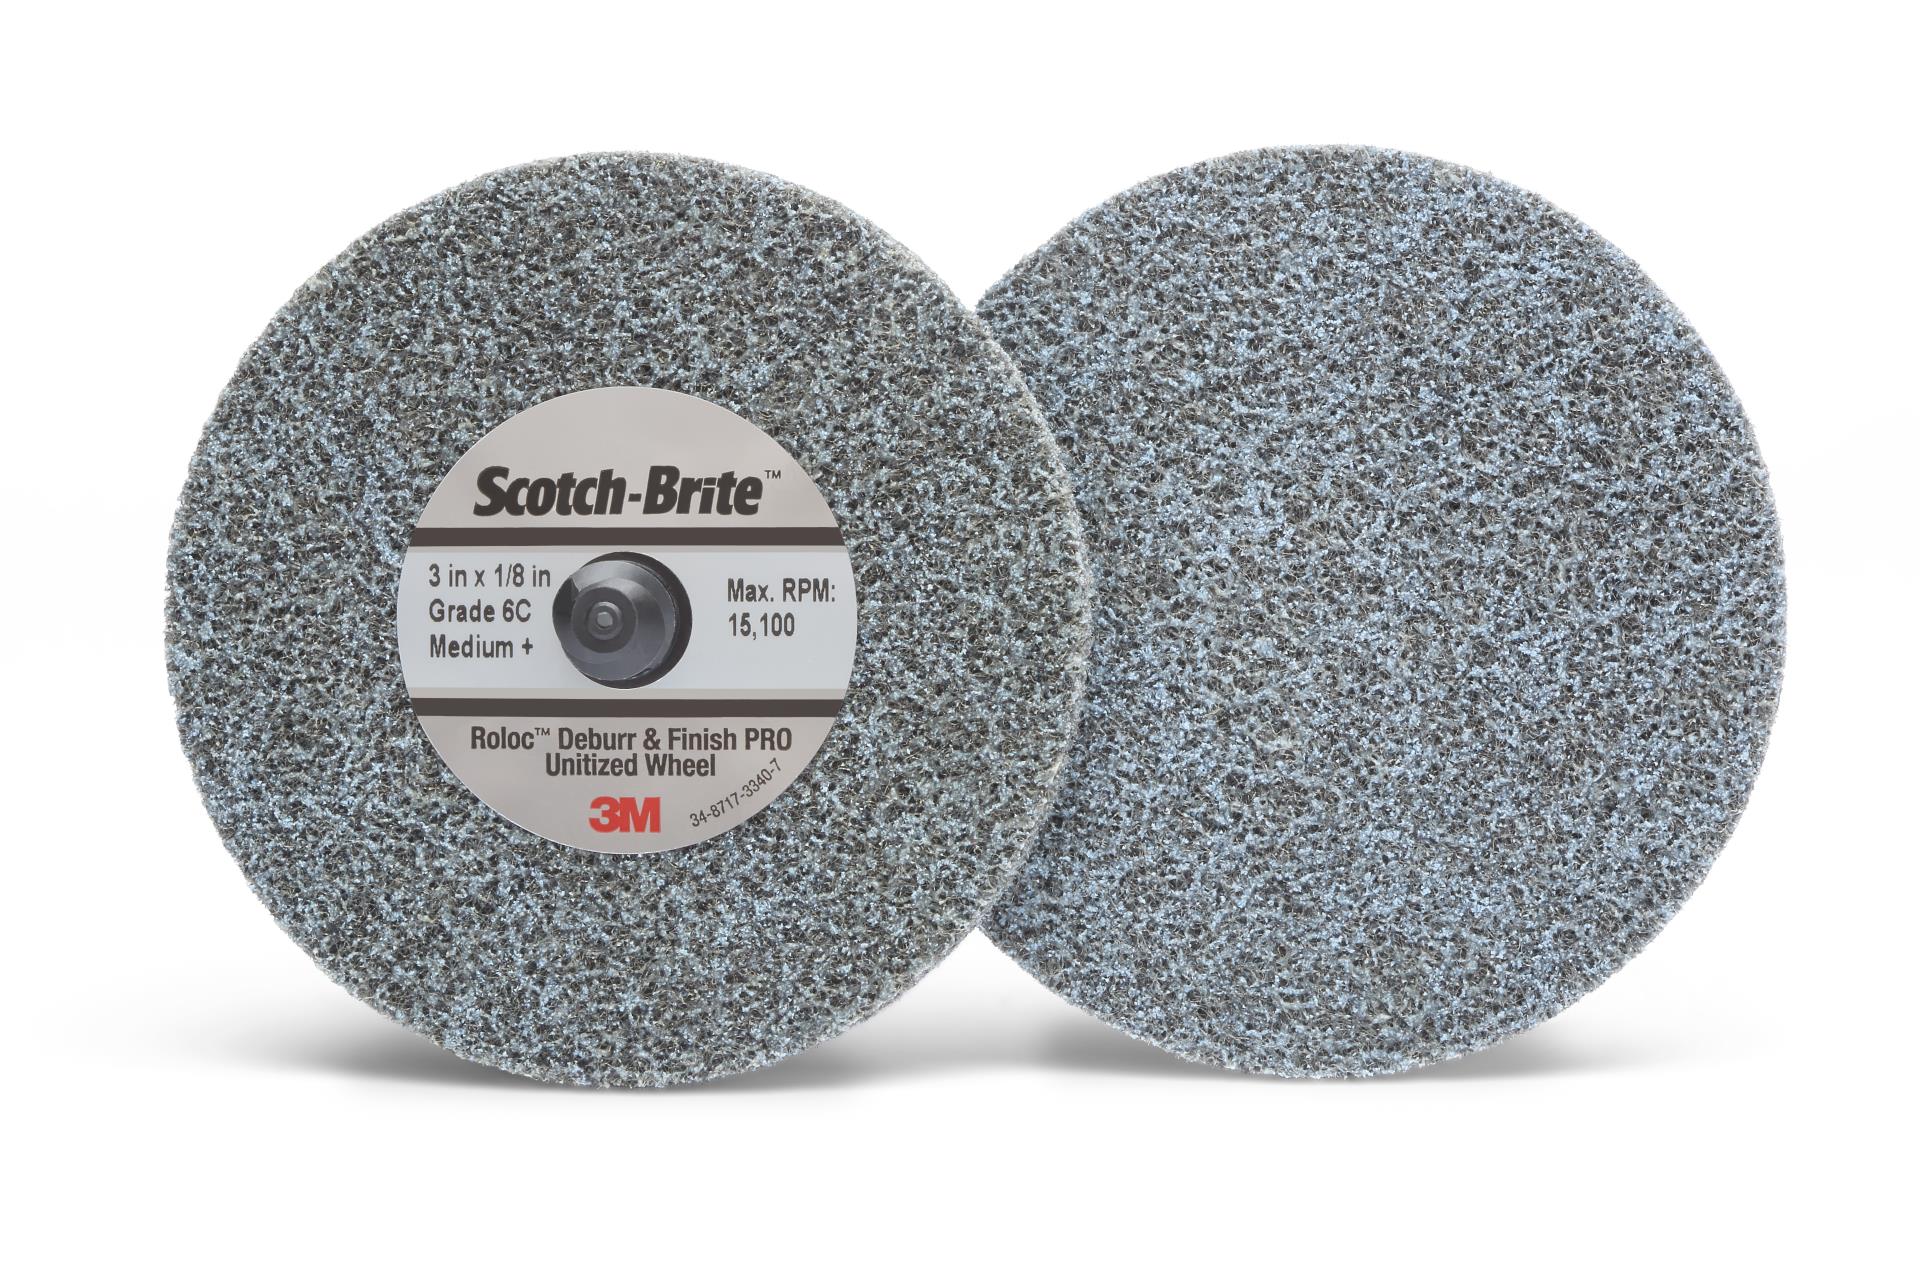 Scotch-Brite Roloc Clean and Finish Disc TS SPR 019670A 3M 2 in x NH S ULF 